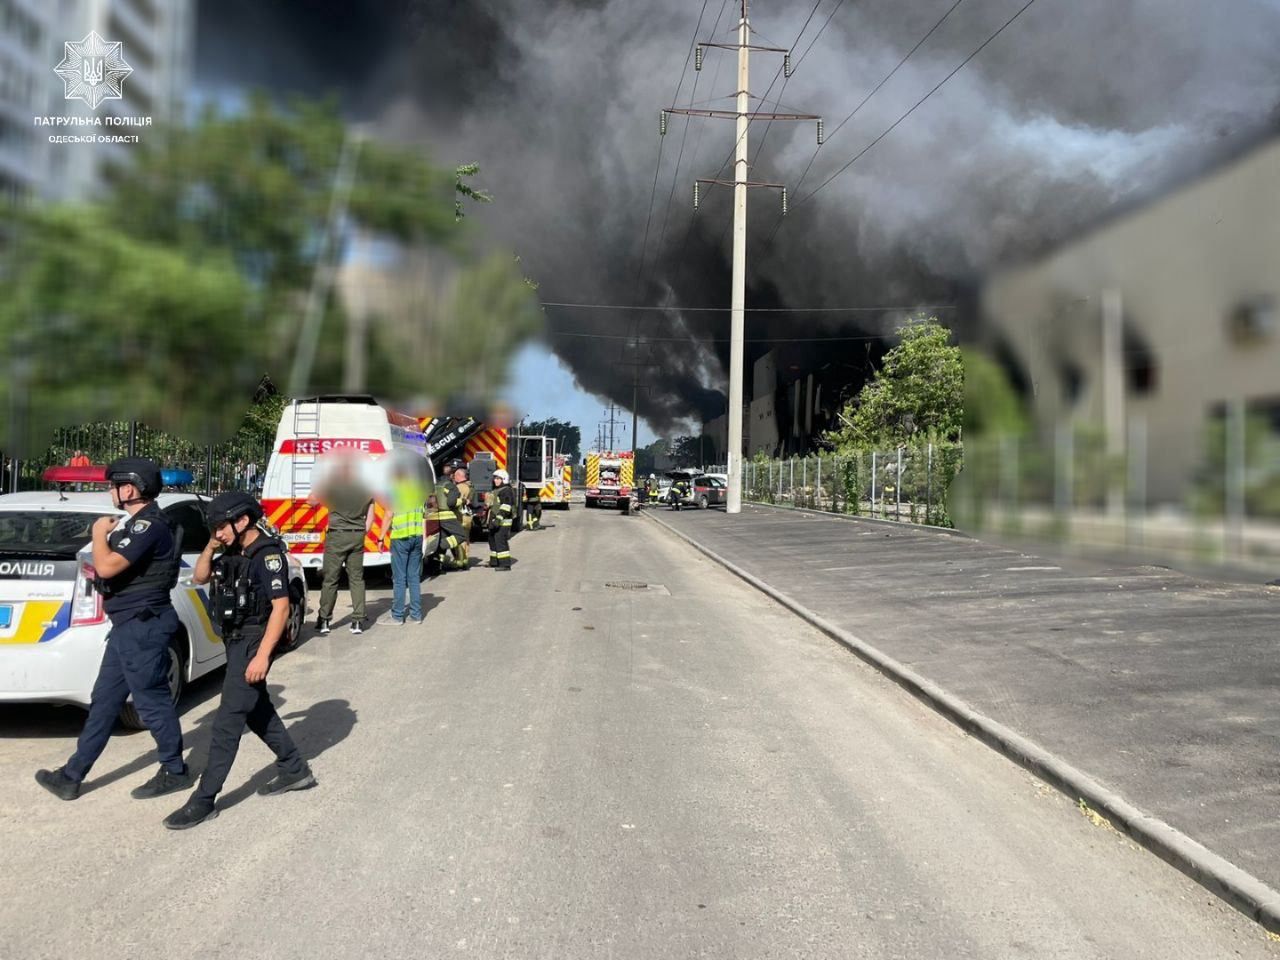 Silna eksplozja w Odessie. "Uderzenie w infrastrukturę cywilną"